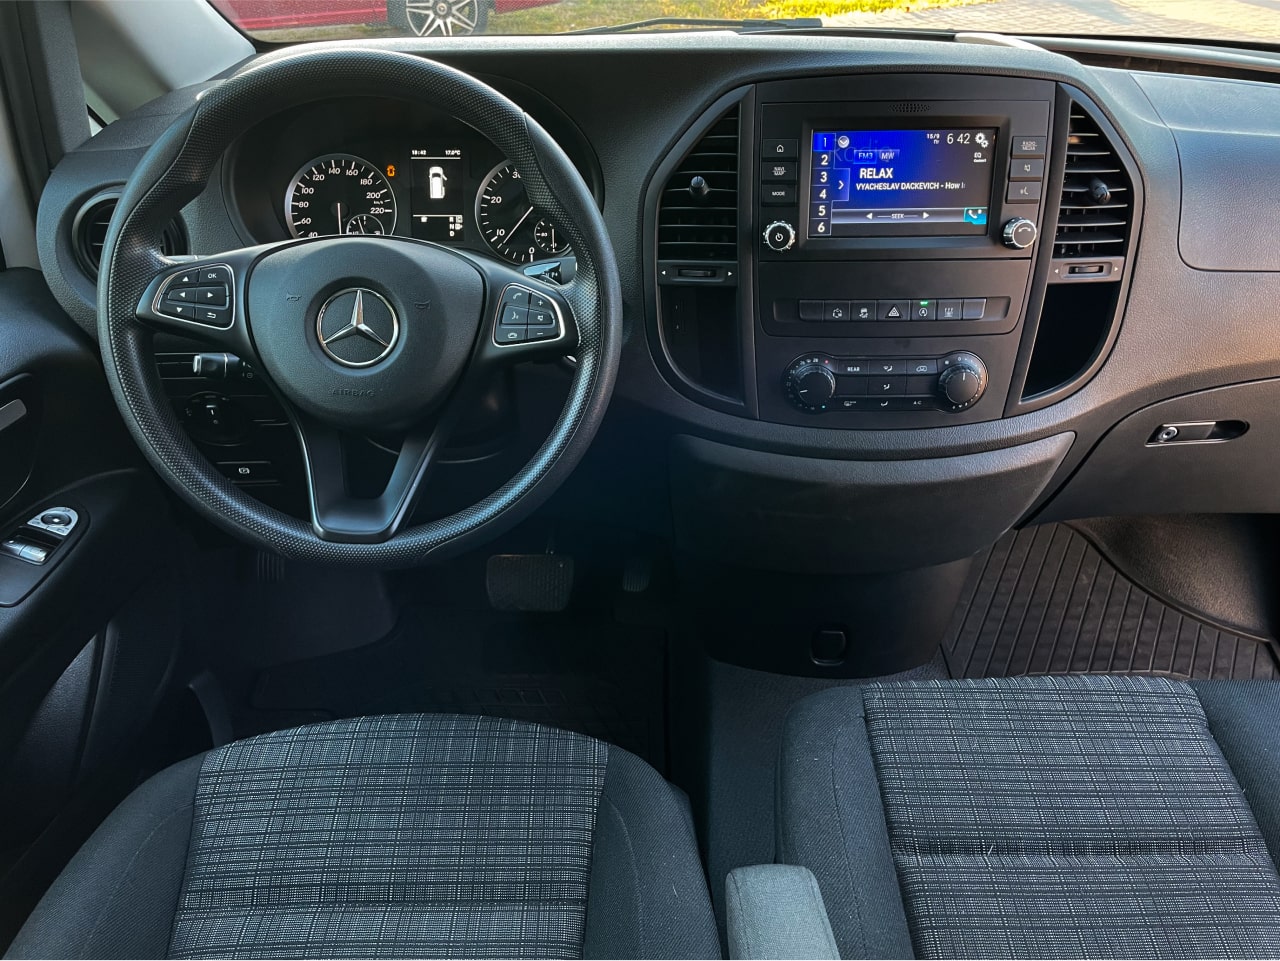 Аренда  Mercedes Benz Vito 116 CDI AT Extra Long Select 8+1  7 класса 2018-2020 года в городе Минск от 85 $/сутки,  двигатель: ДТ , объем 2.1 литров, КАСКО (Мультидрайв), без водителя, вид 9 - West Group